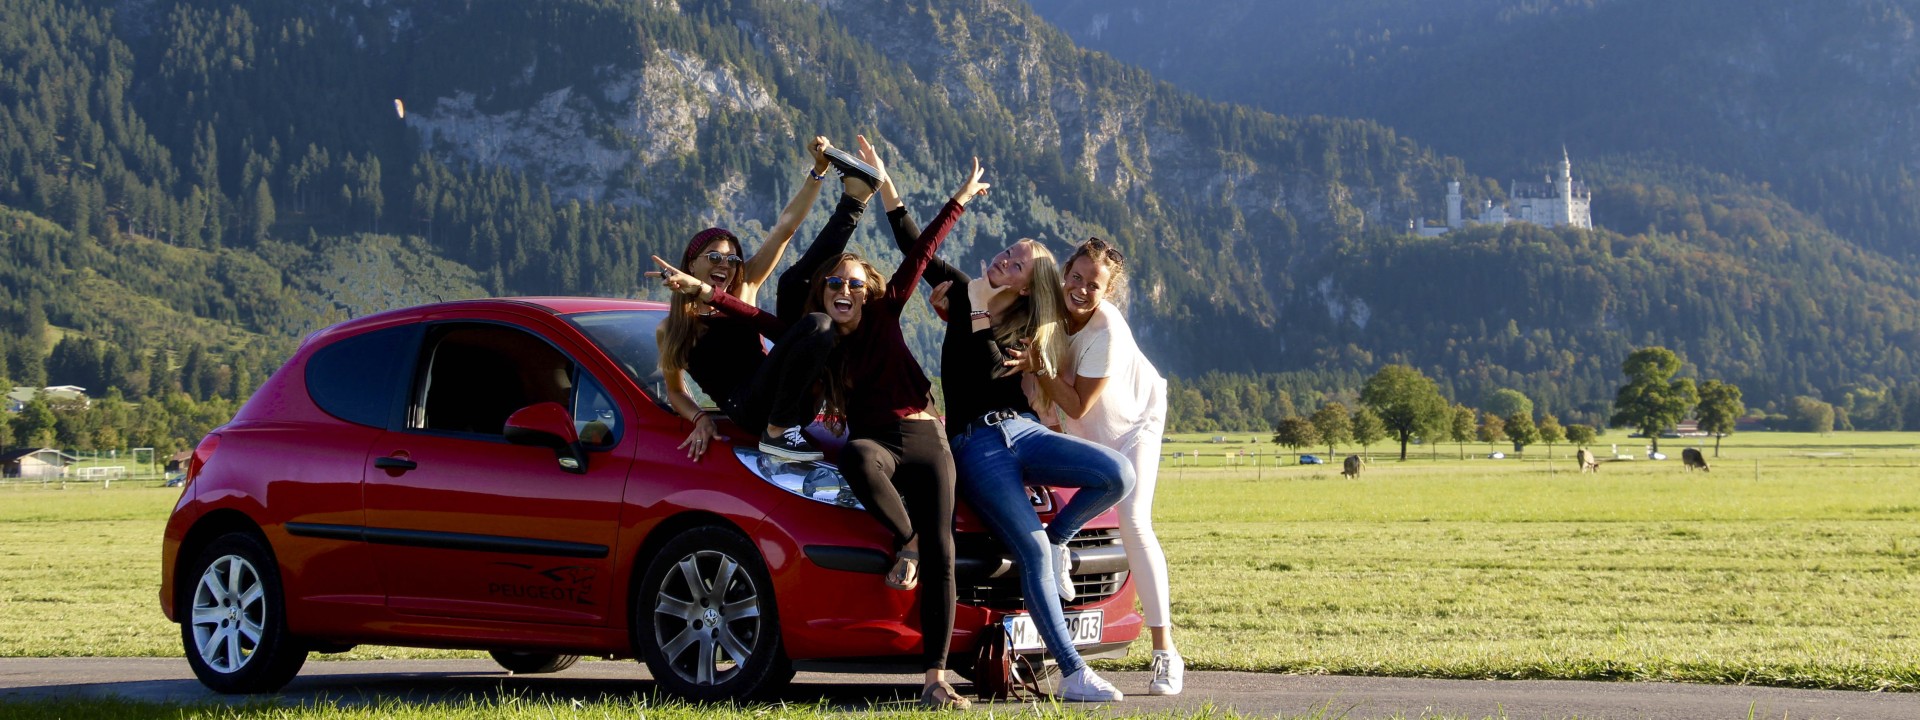 Vier Studentinnen posieren auf der Maske eines roten Kleinwagens, im Hintergrund eine Wiese, Gebirge und Schloss Neuschwanstein